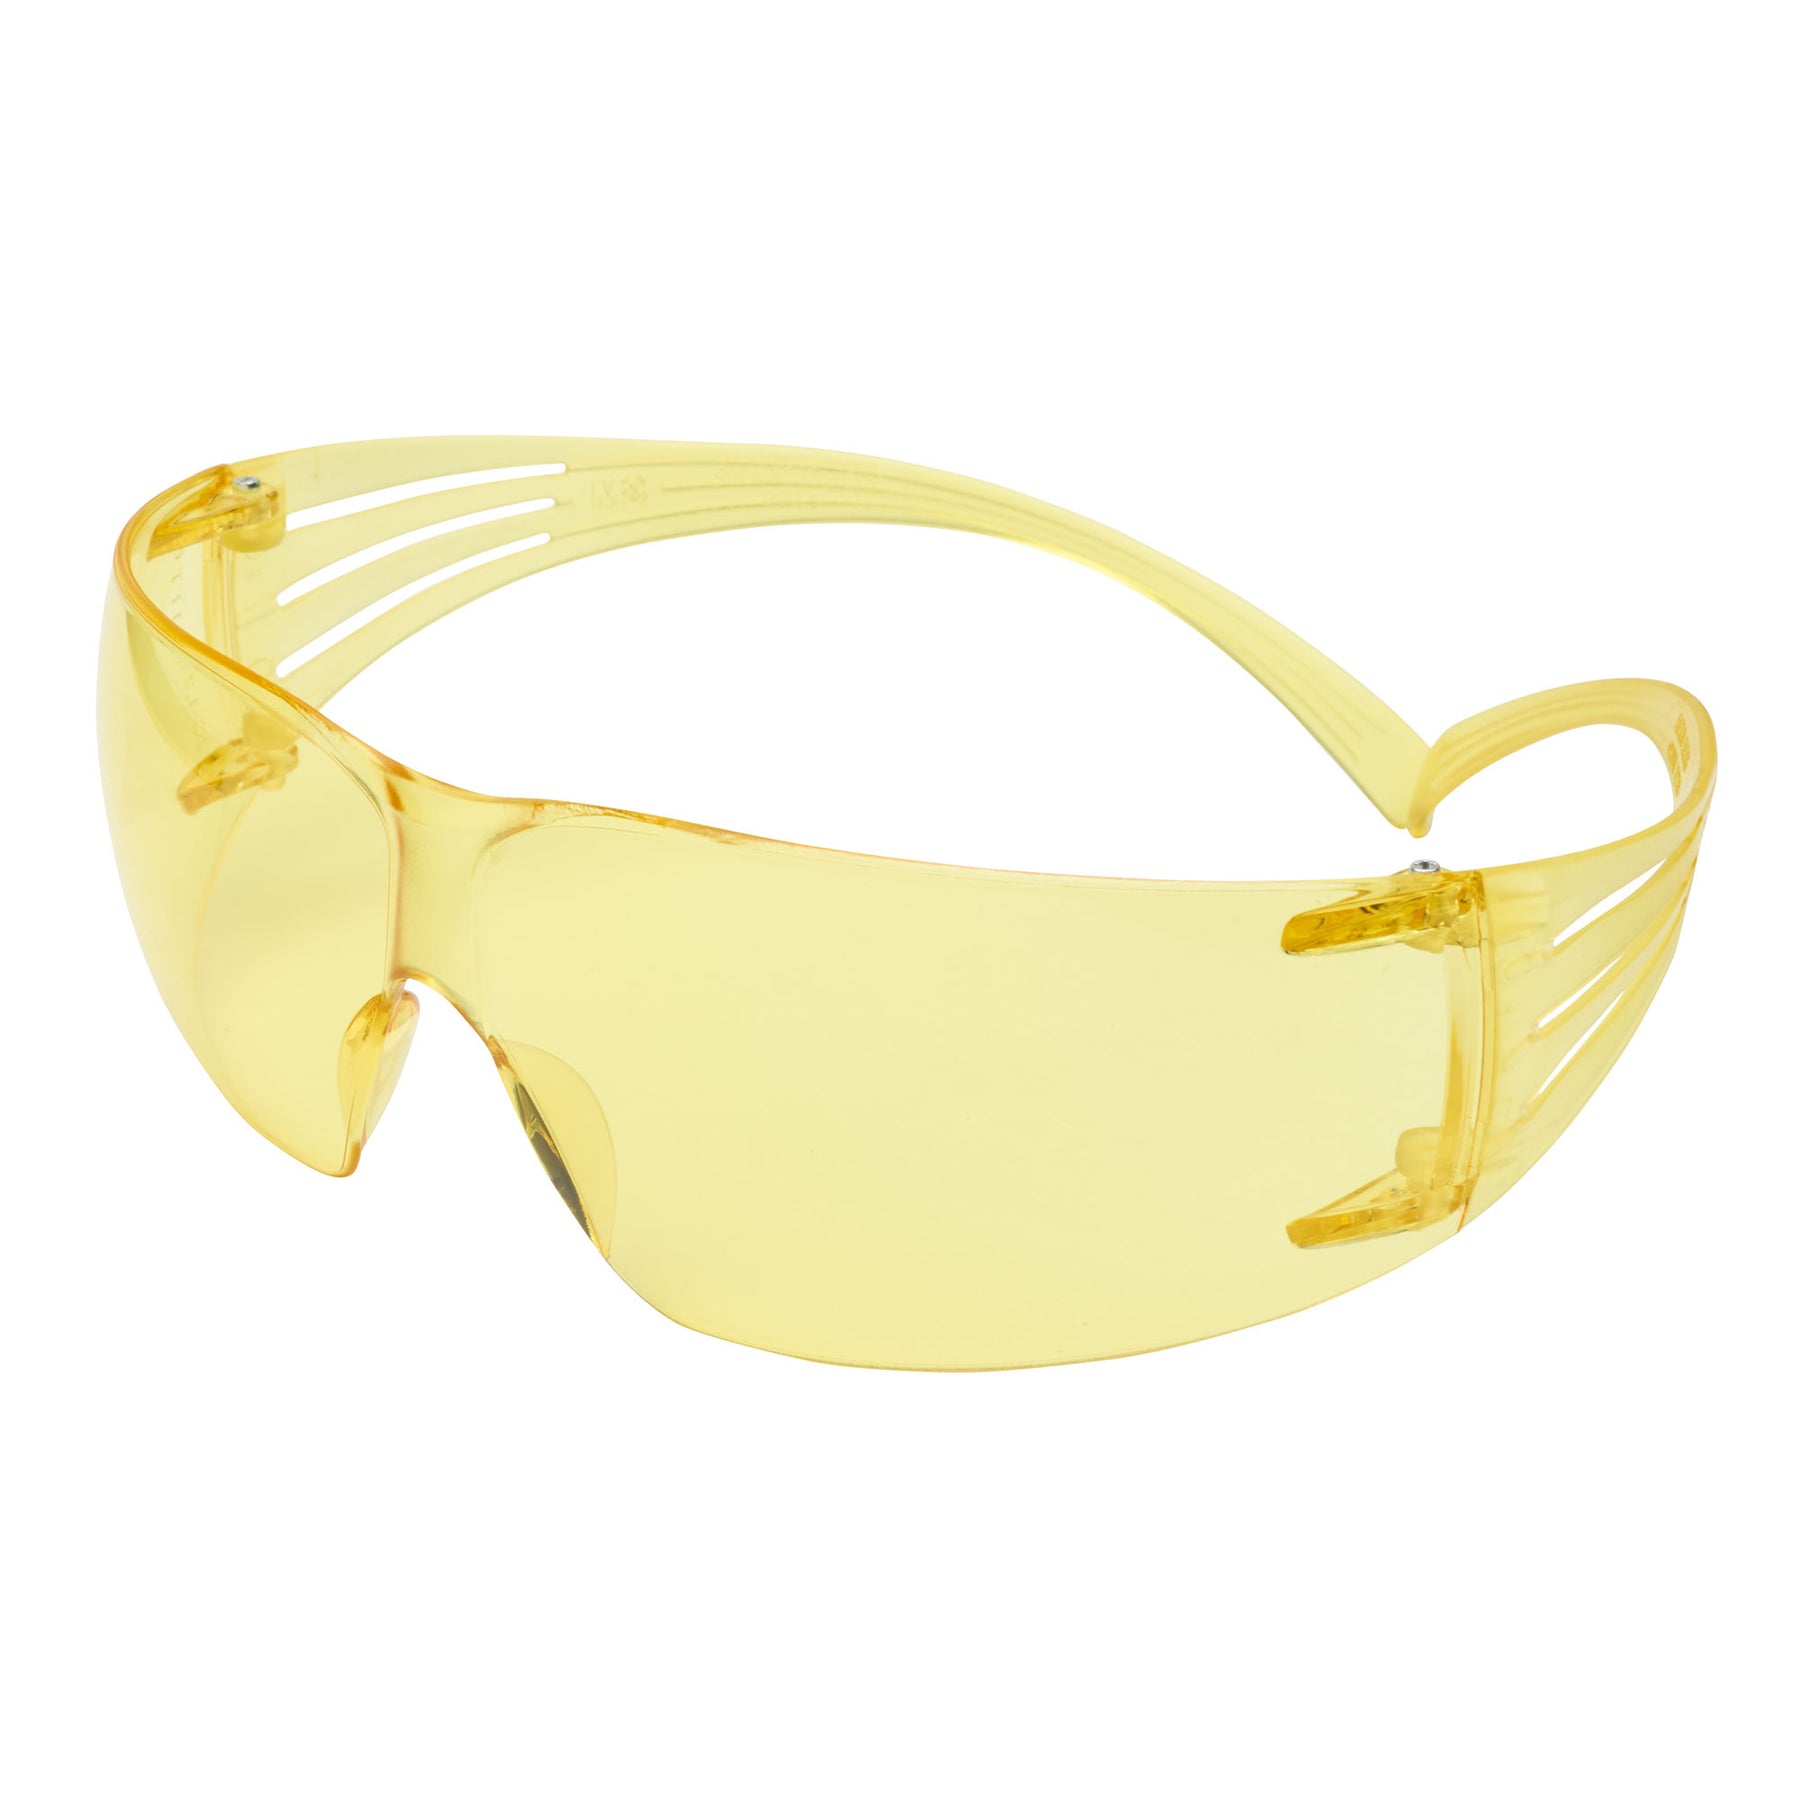 3M™ SecureFit™ 200 Safety Glasses